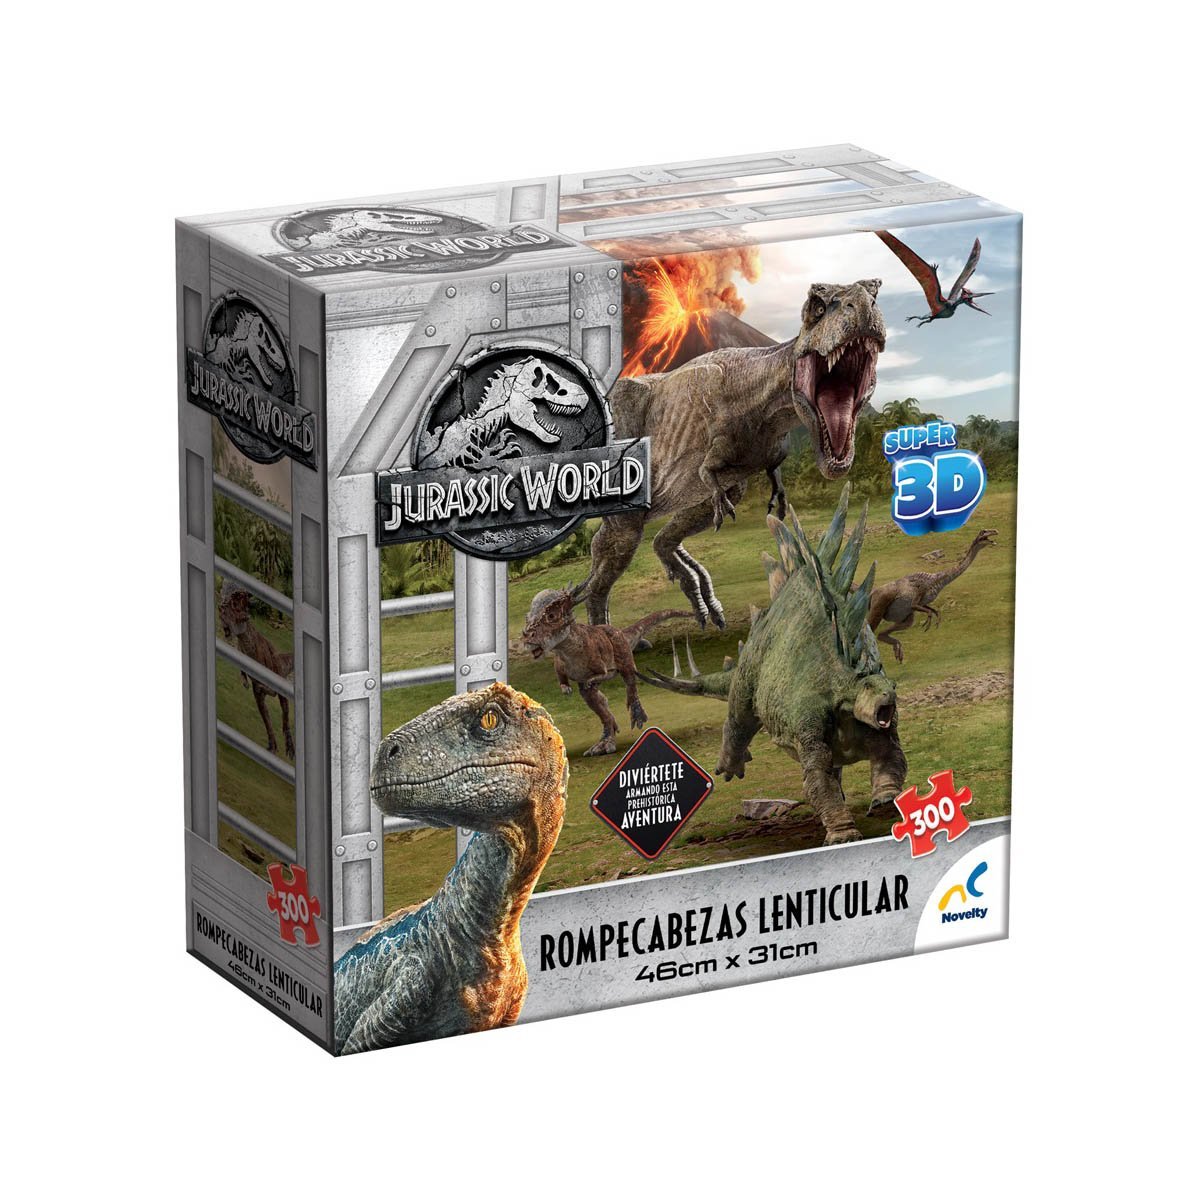 Rompecabezas 3D Jurassic World Novelty